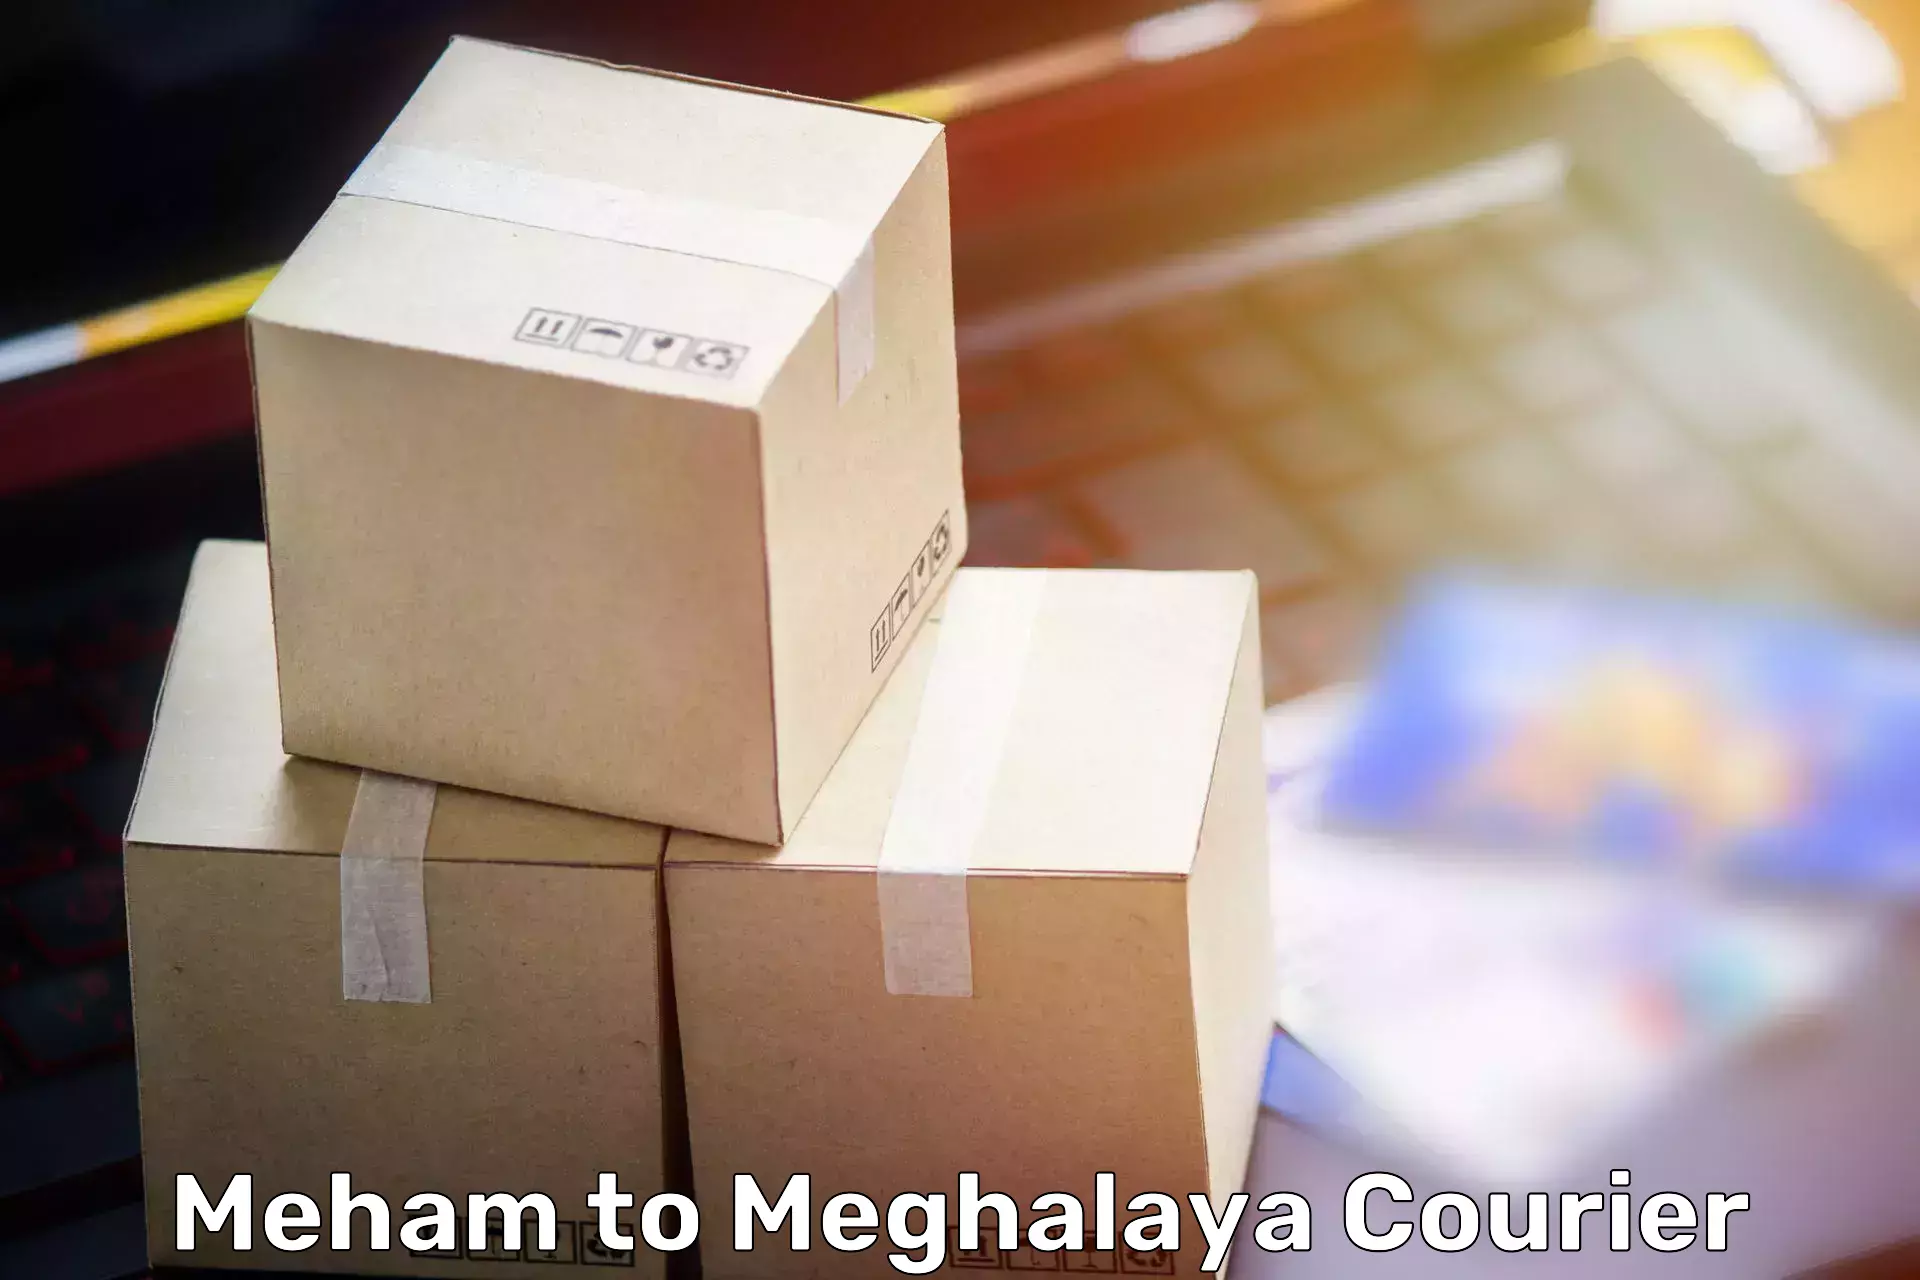 Furniture moving experts Meham to Meghalaya